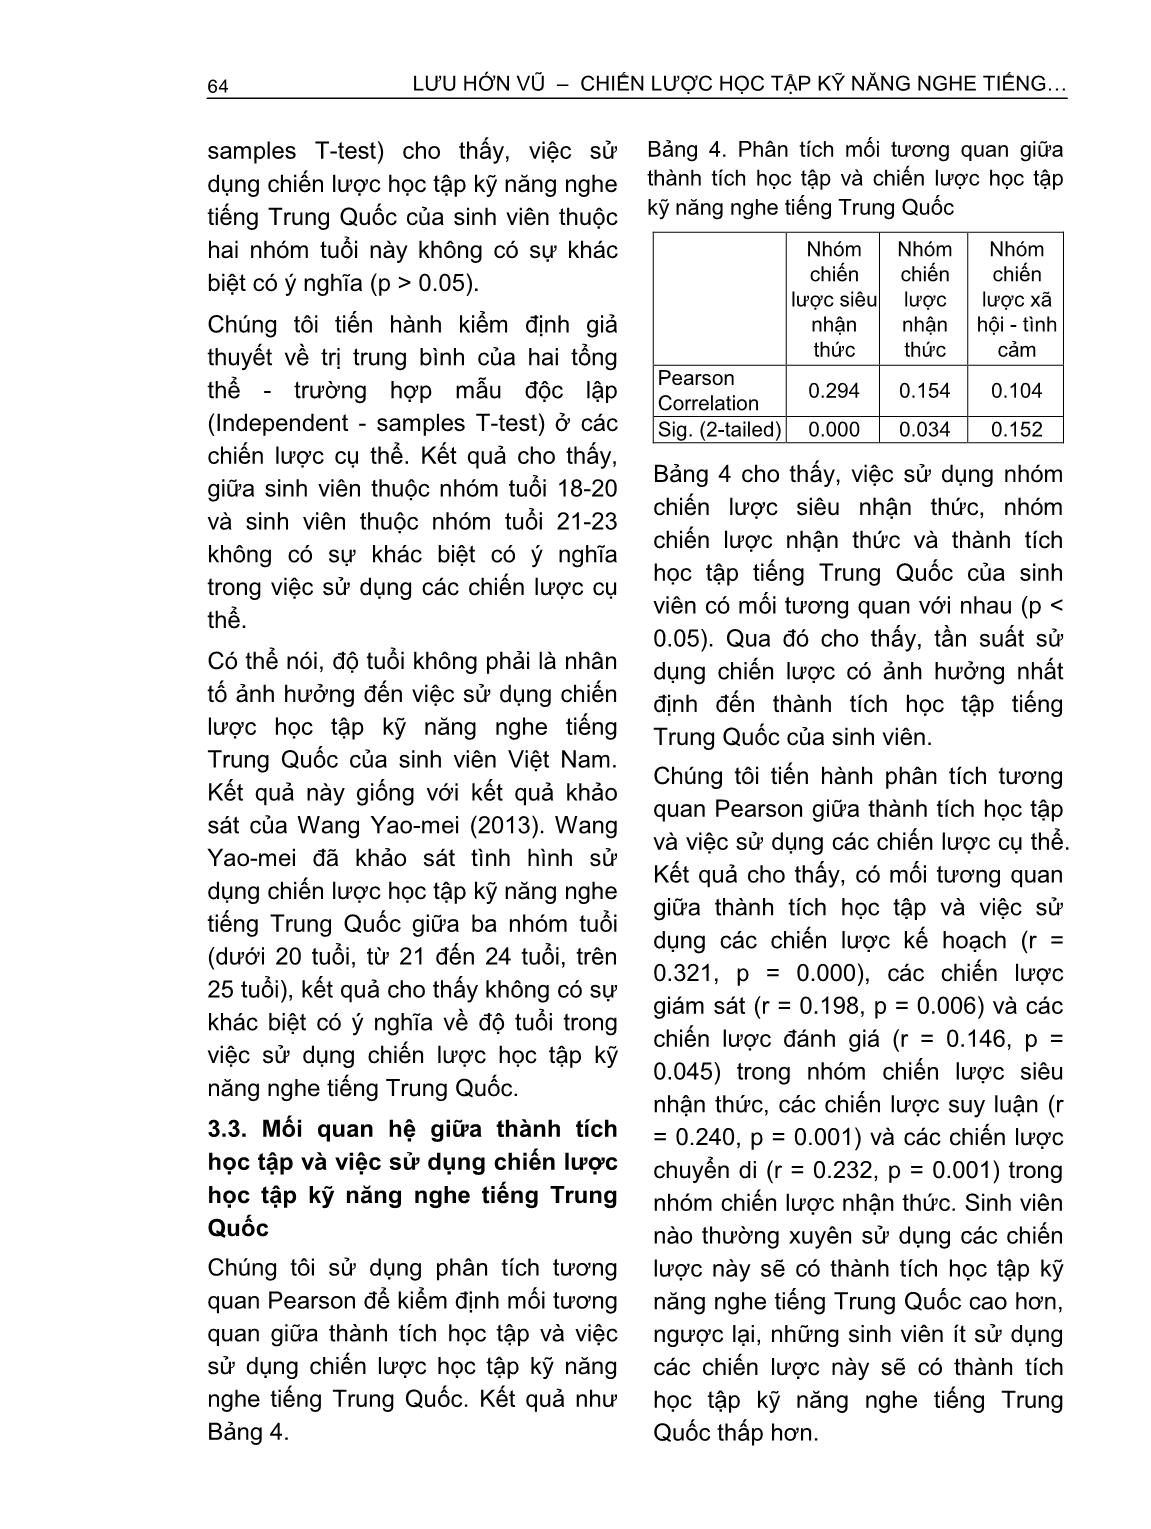 Chiến lược học tập kỹ năng nghe tiếng Trung Quốc của sinh viên Việt Nam trang 6